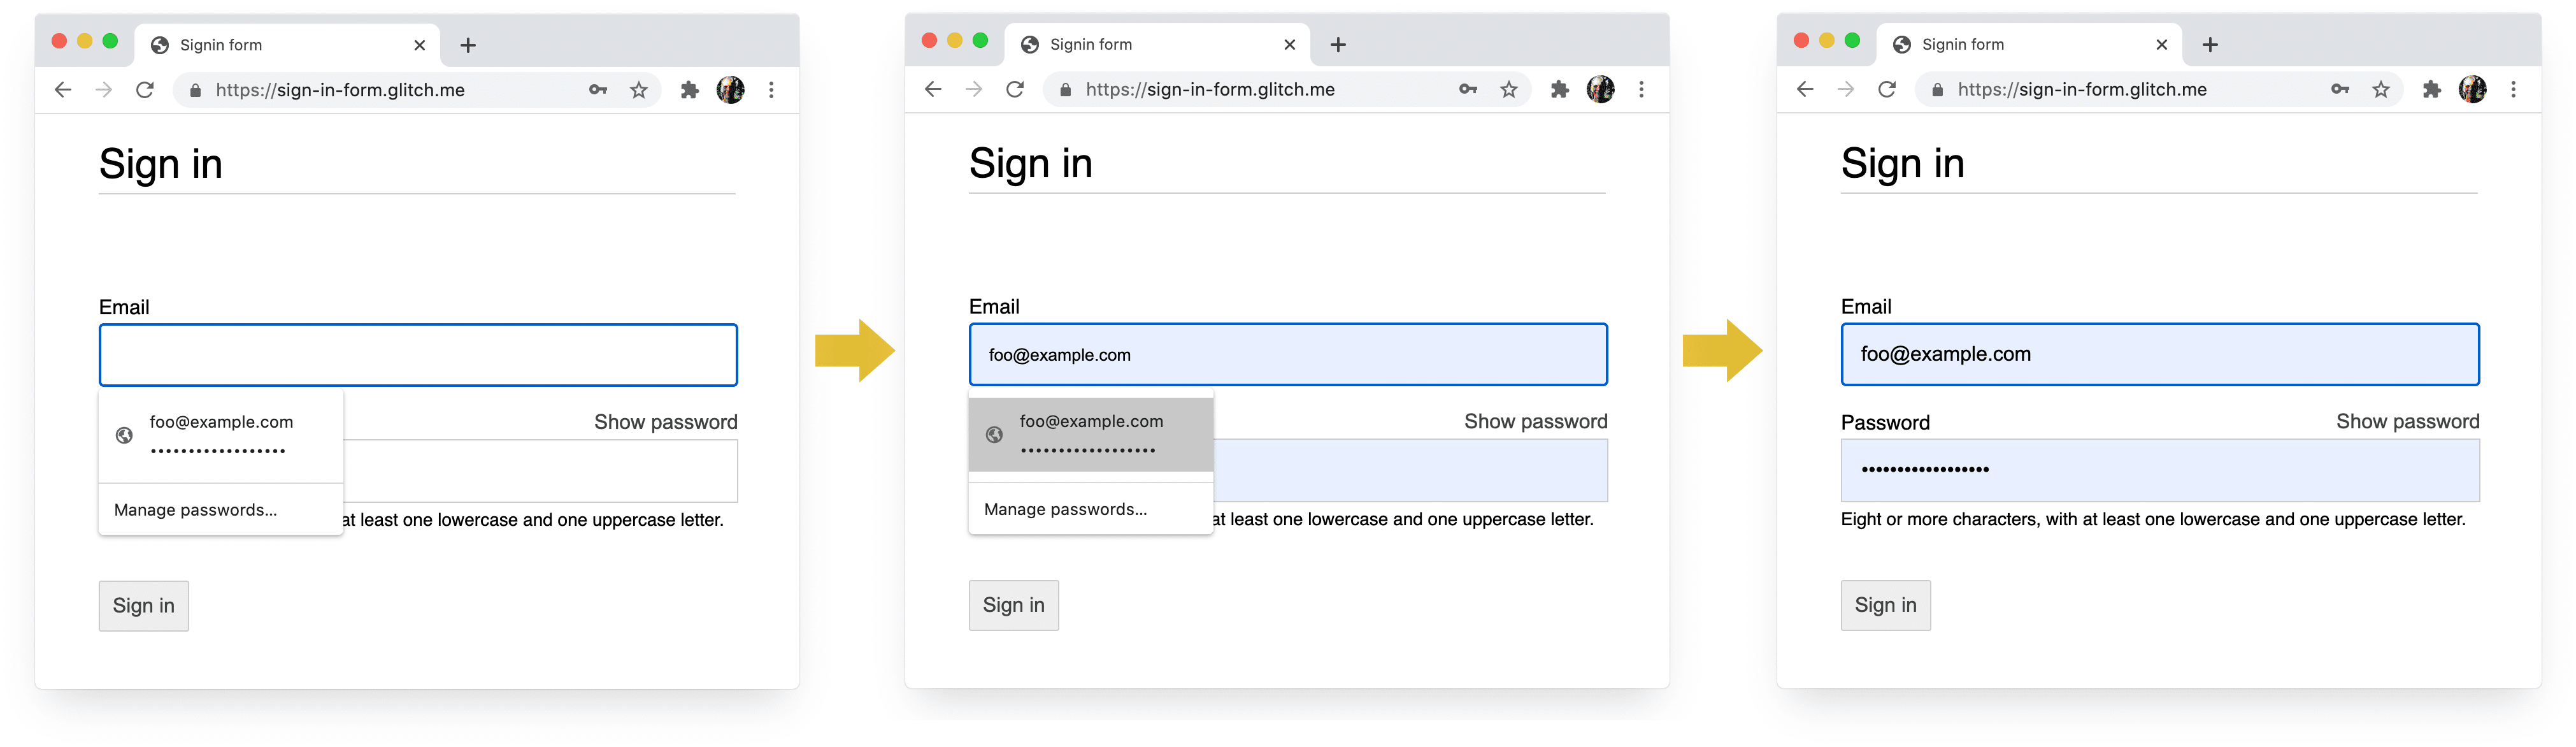 Screenshot di quattro fasi del processo di accesso in Chrome su computer: completamento email, suggerimento email, gestore delle password, compilazione automatica alla selezione.